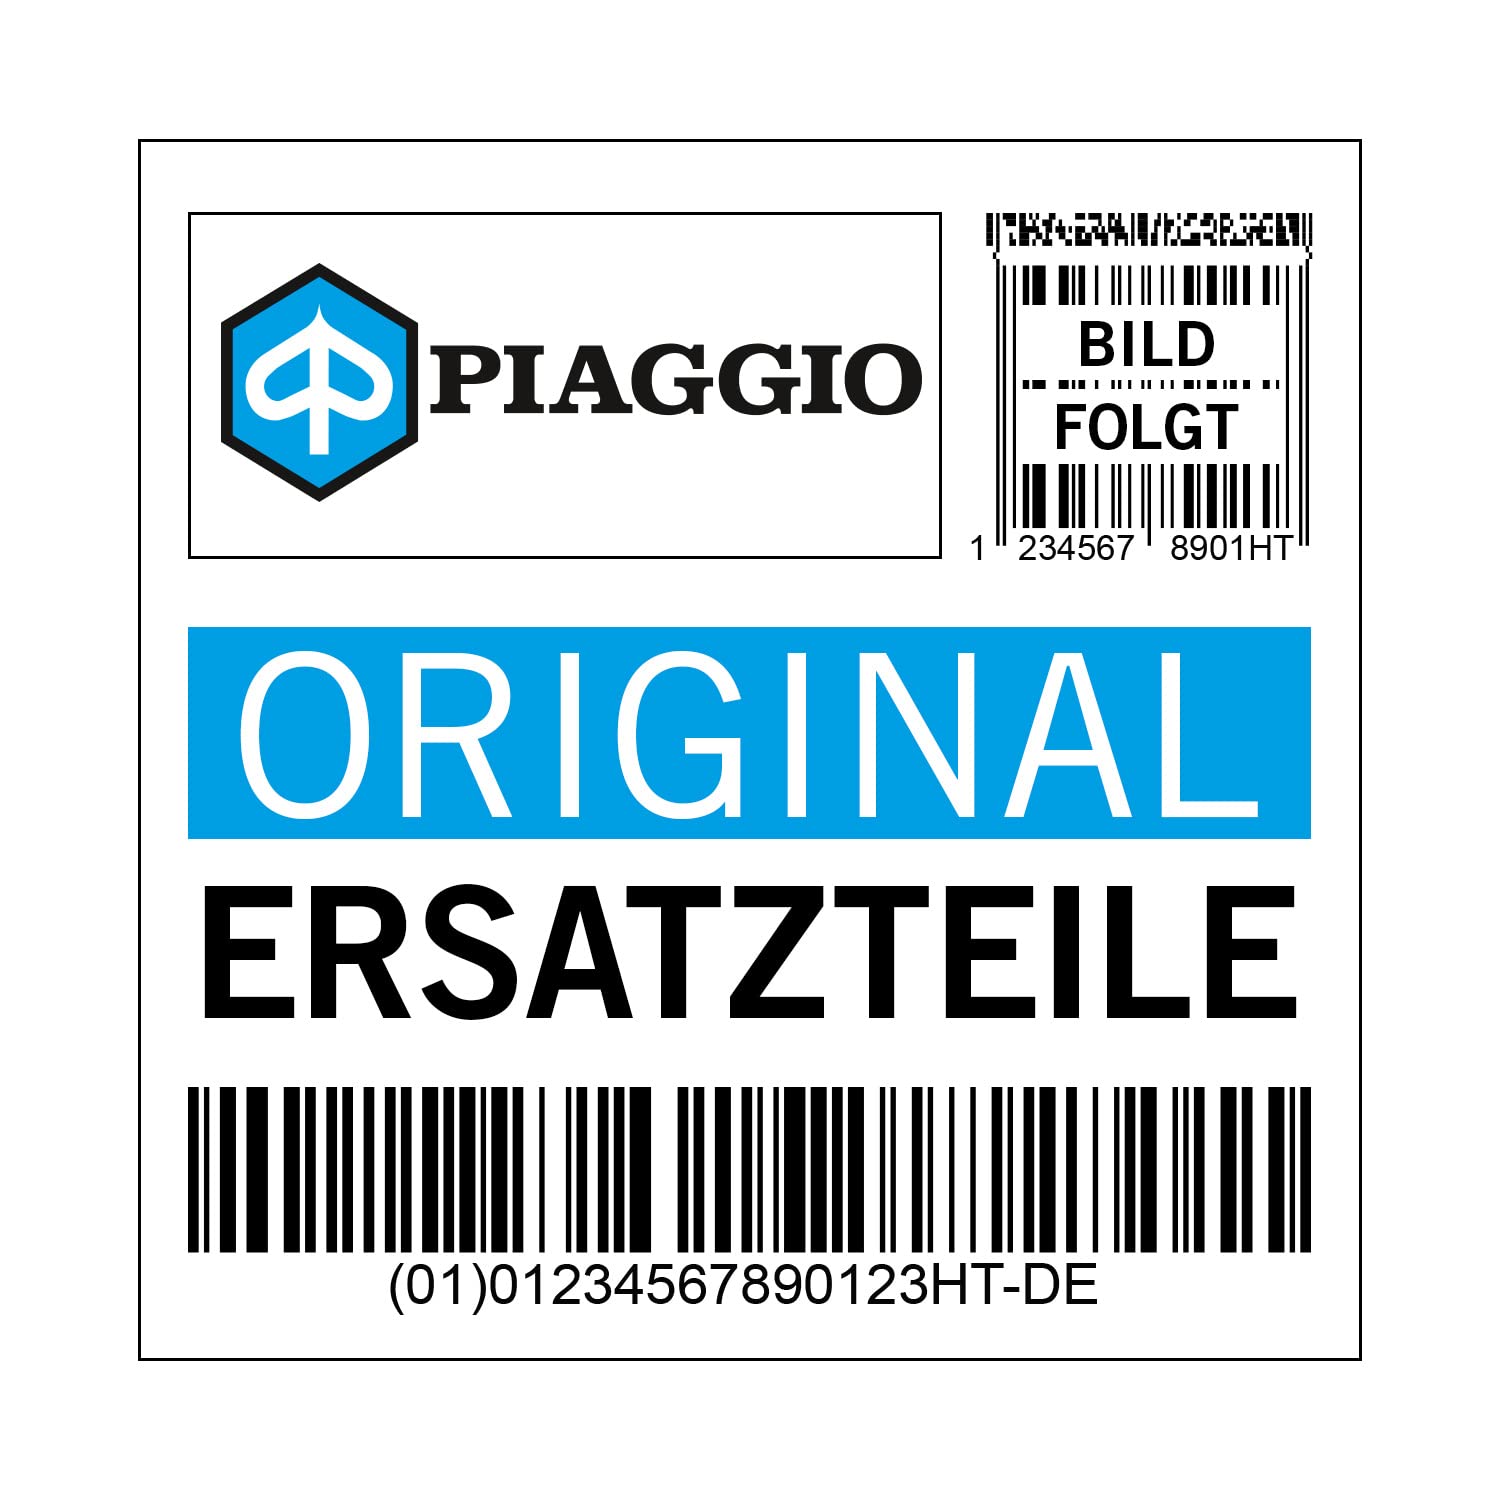 Deckel Piaggio Verschlussschraube, rechts, weiß, BR weiß montebianco/innocenza / 544, 1B000074000BR